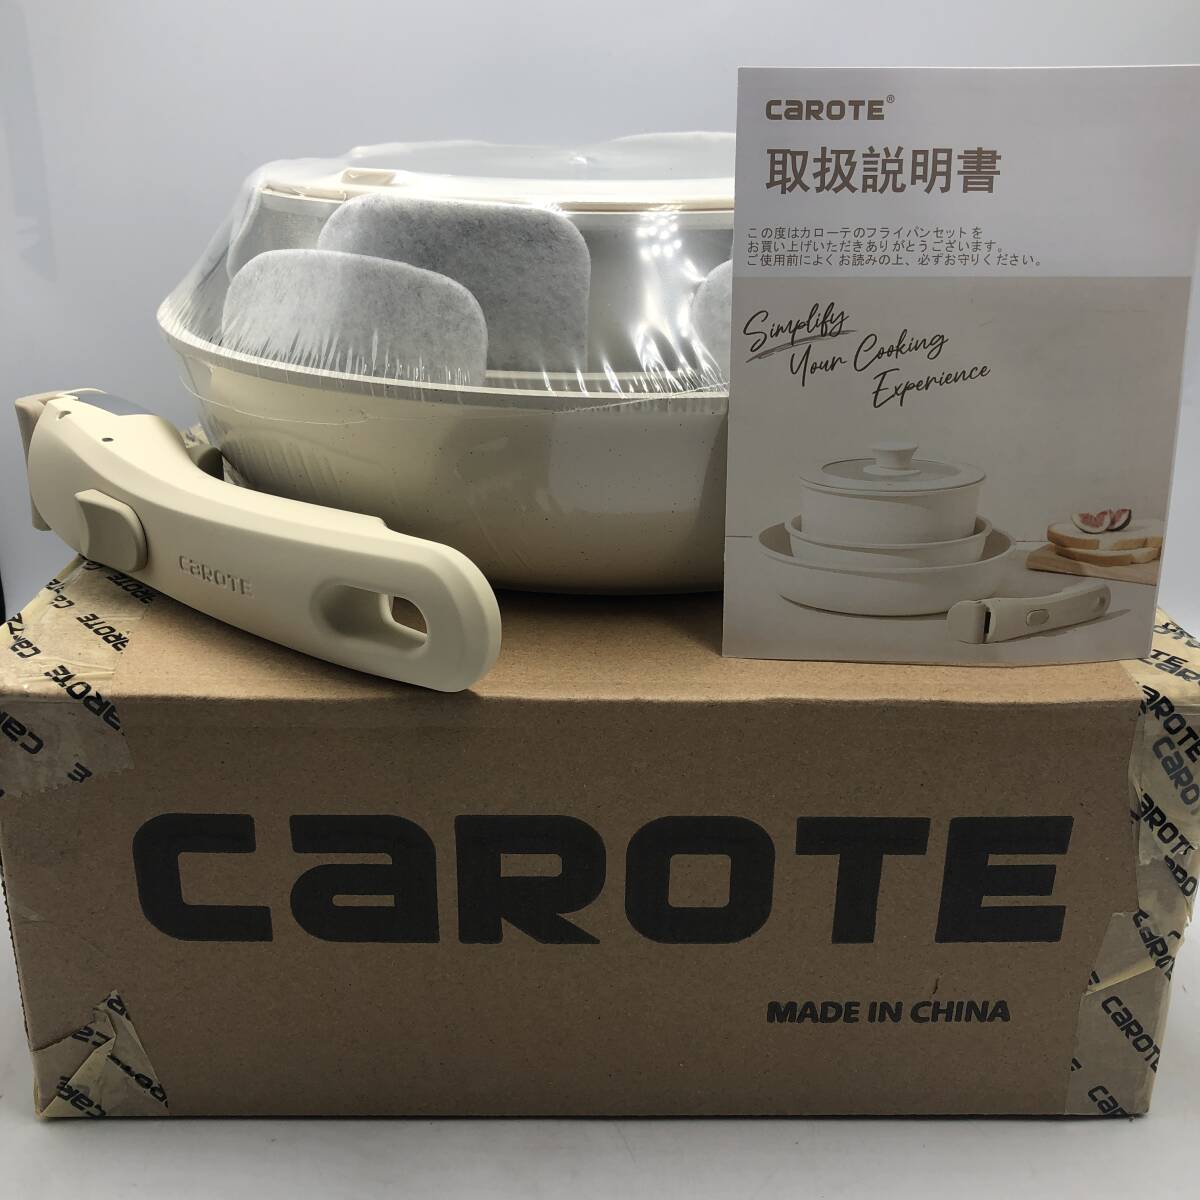 【未開封】CAROTE カローテ フライパン セット 5点 IH ガス火対応 /Y16594-O1